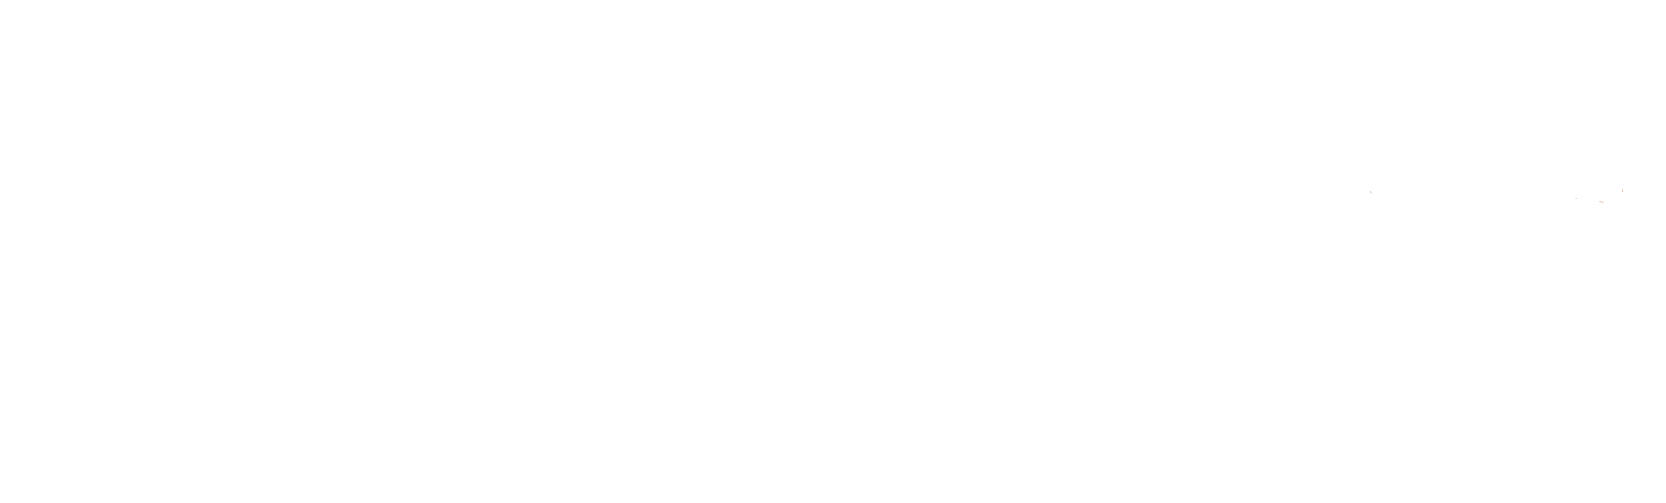 Jobtrans Logo eps